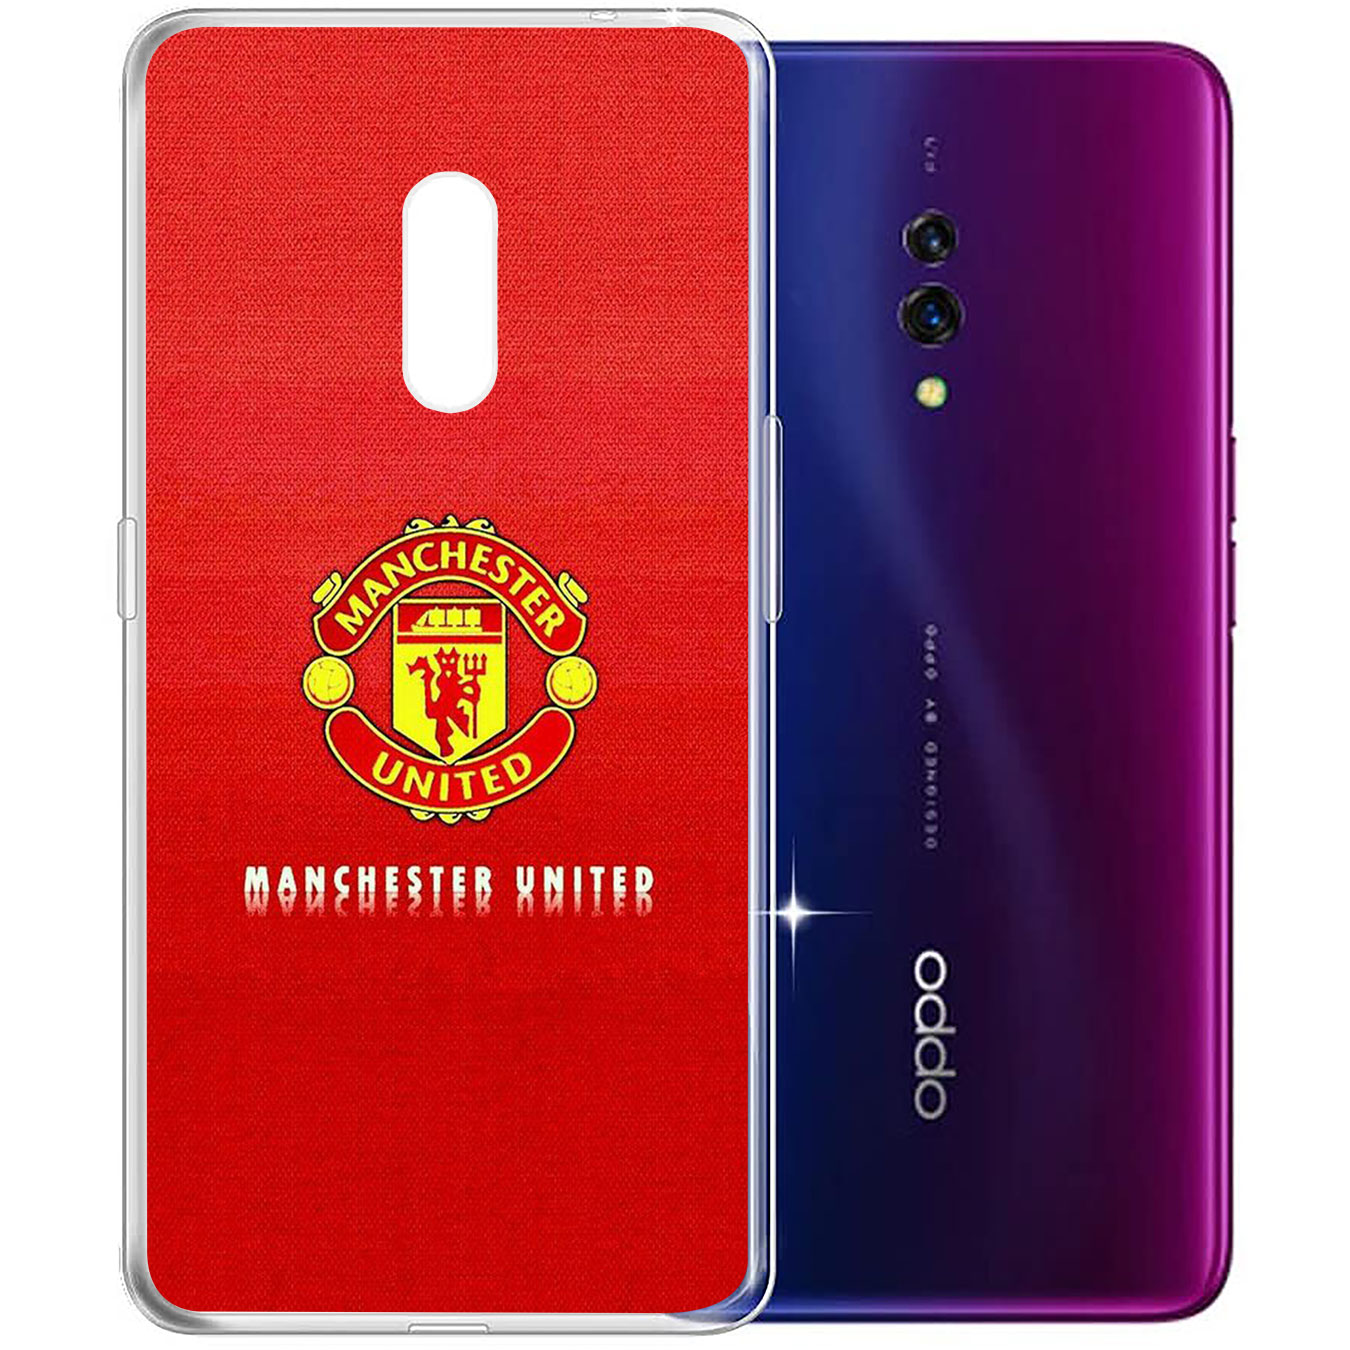 Ốp silicon họa tiết logo đội bóng Manchester United cho Samsung Galaxy A71 A70 M20 A6 Plus A7 A8 A9 2018 A6+ S7 Edge